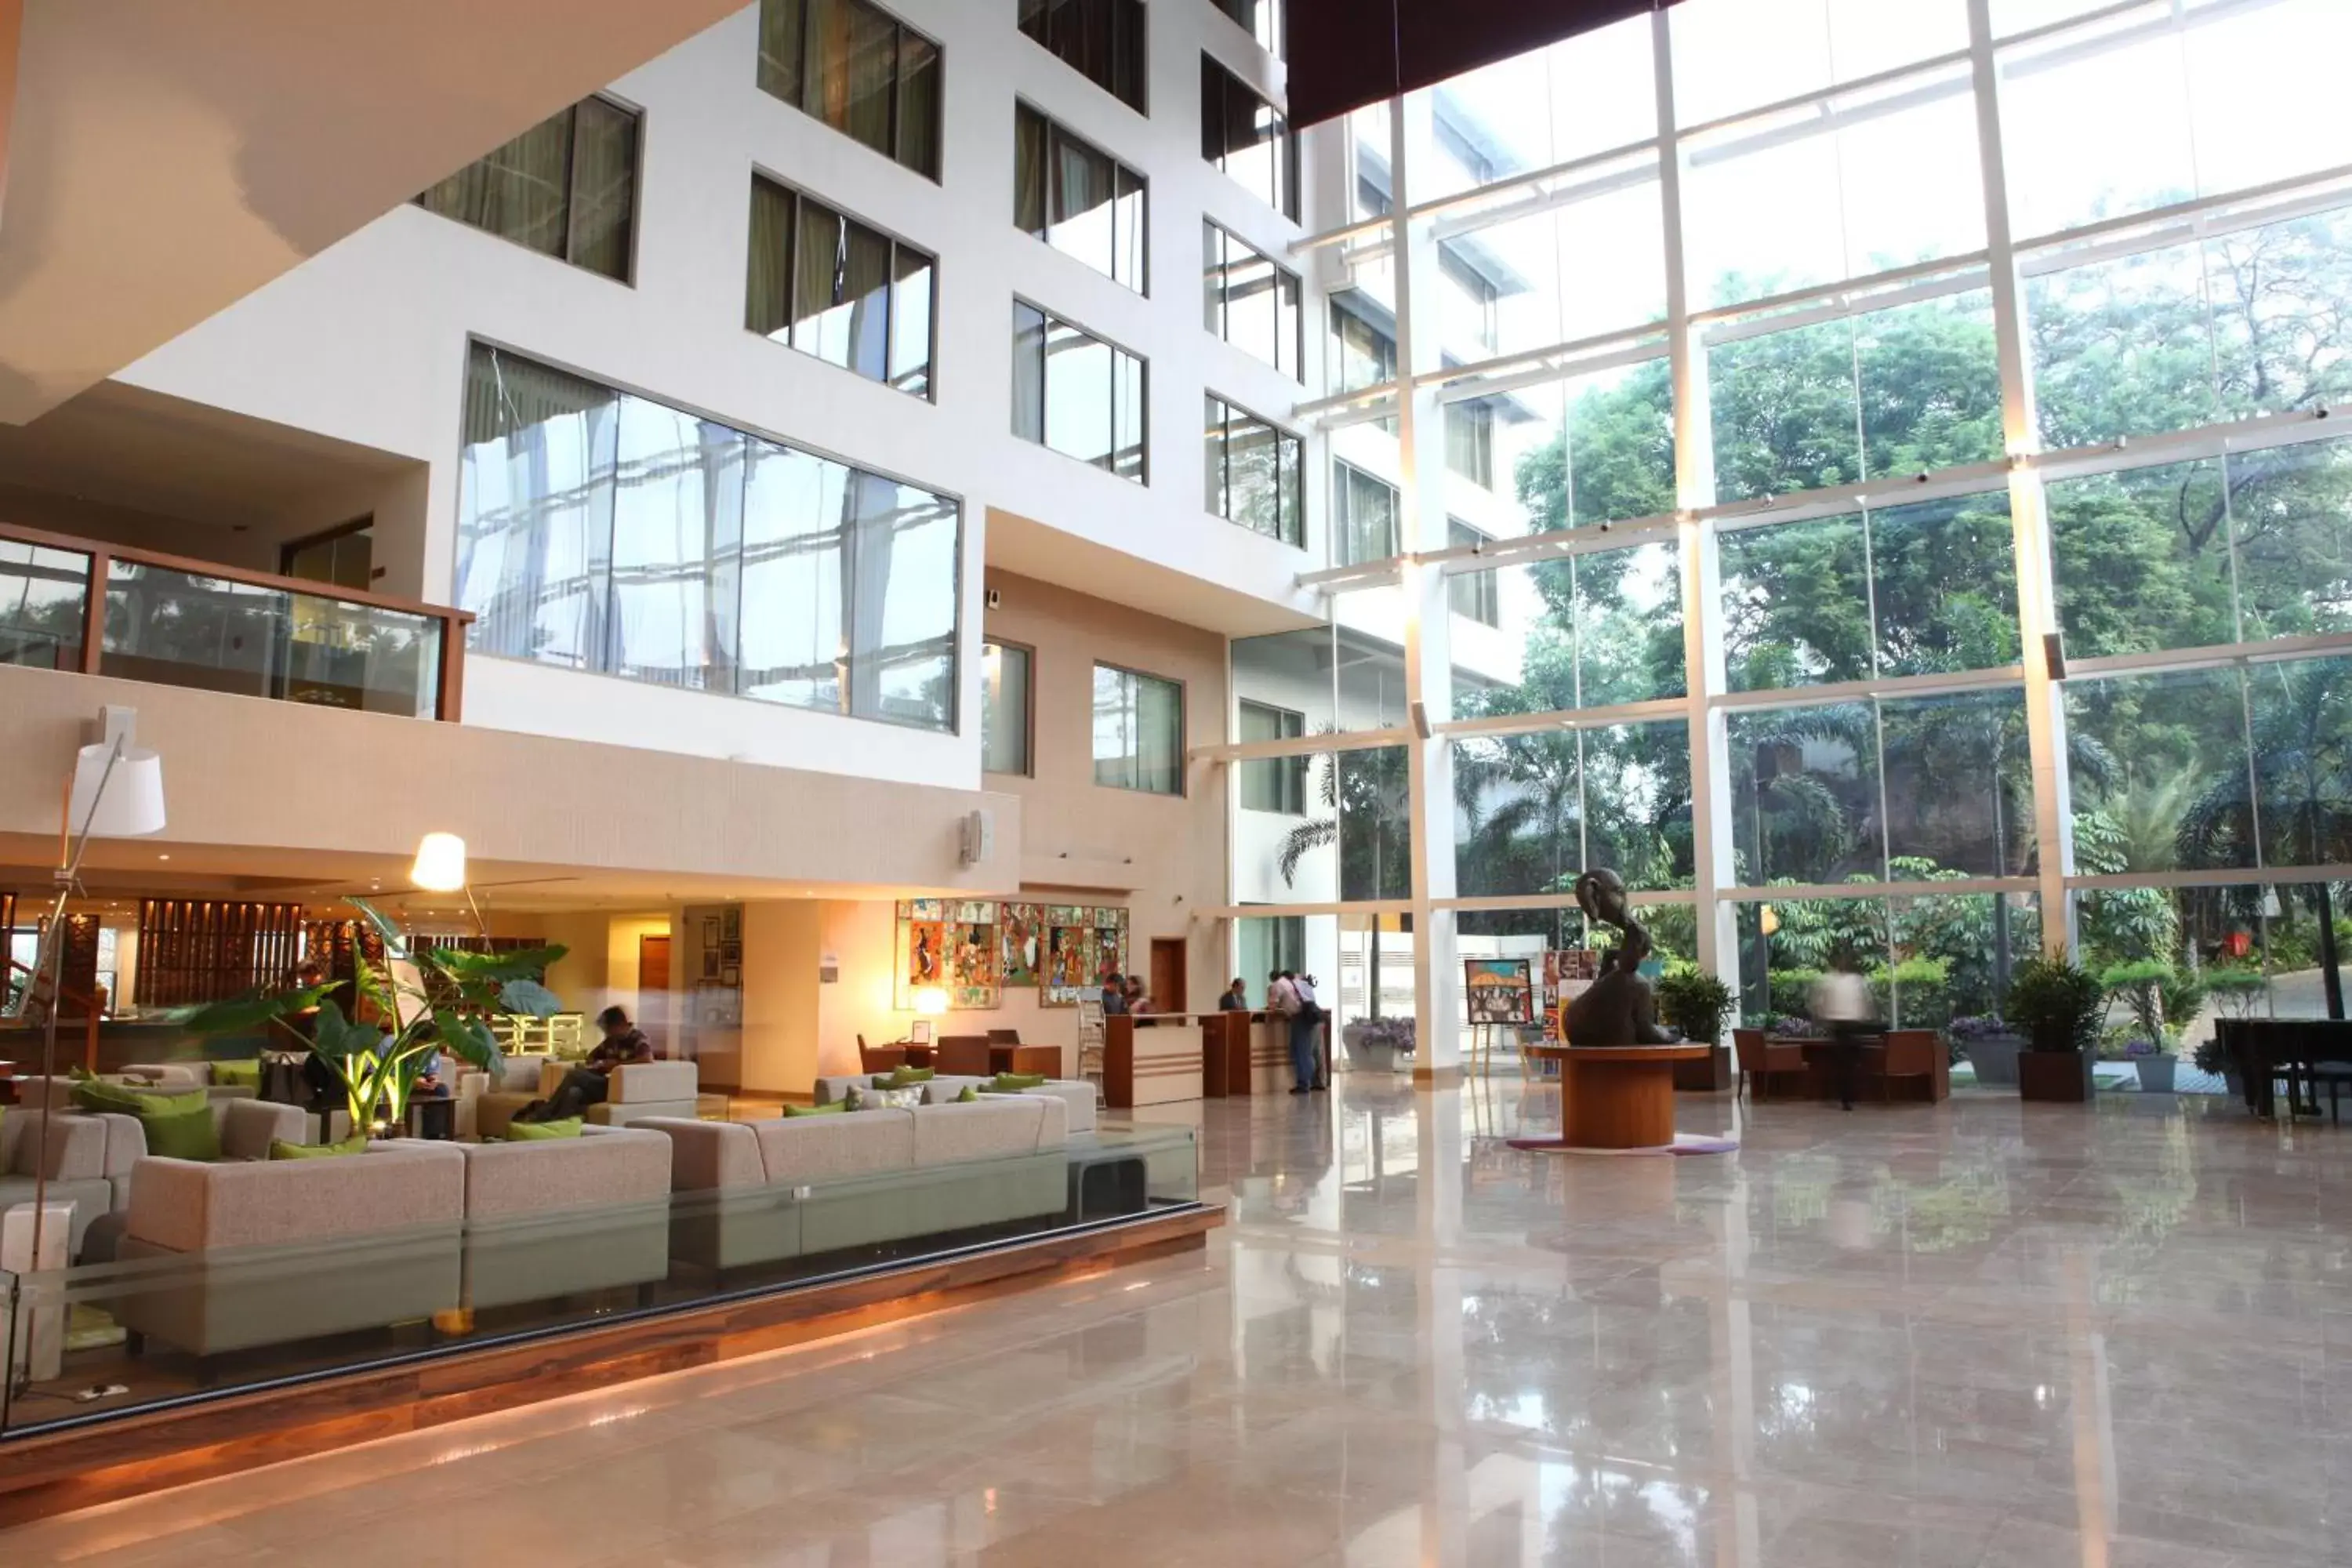 Lobby or reception in Radisson Blu Plaza Hotel Hyderabad Banjara Hills